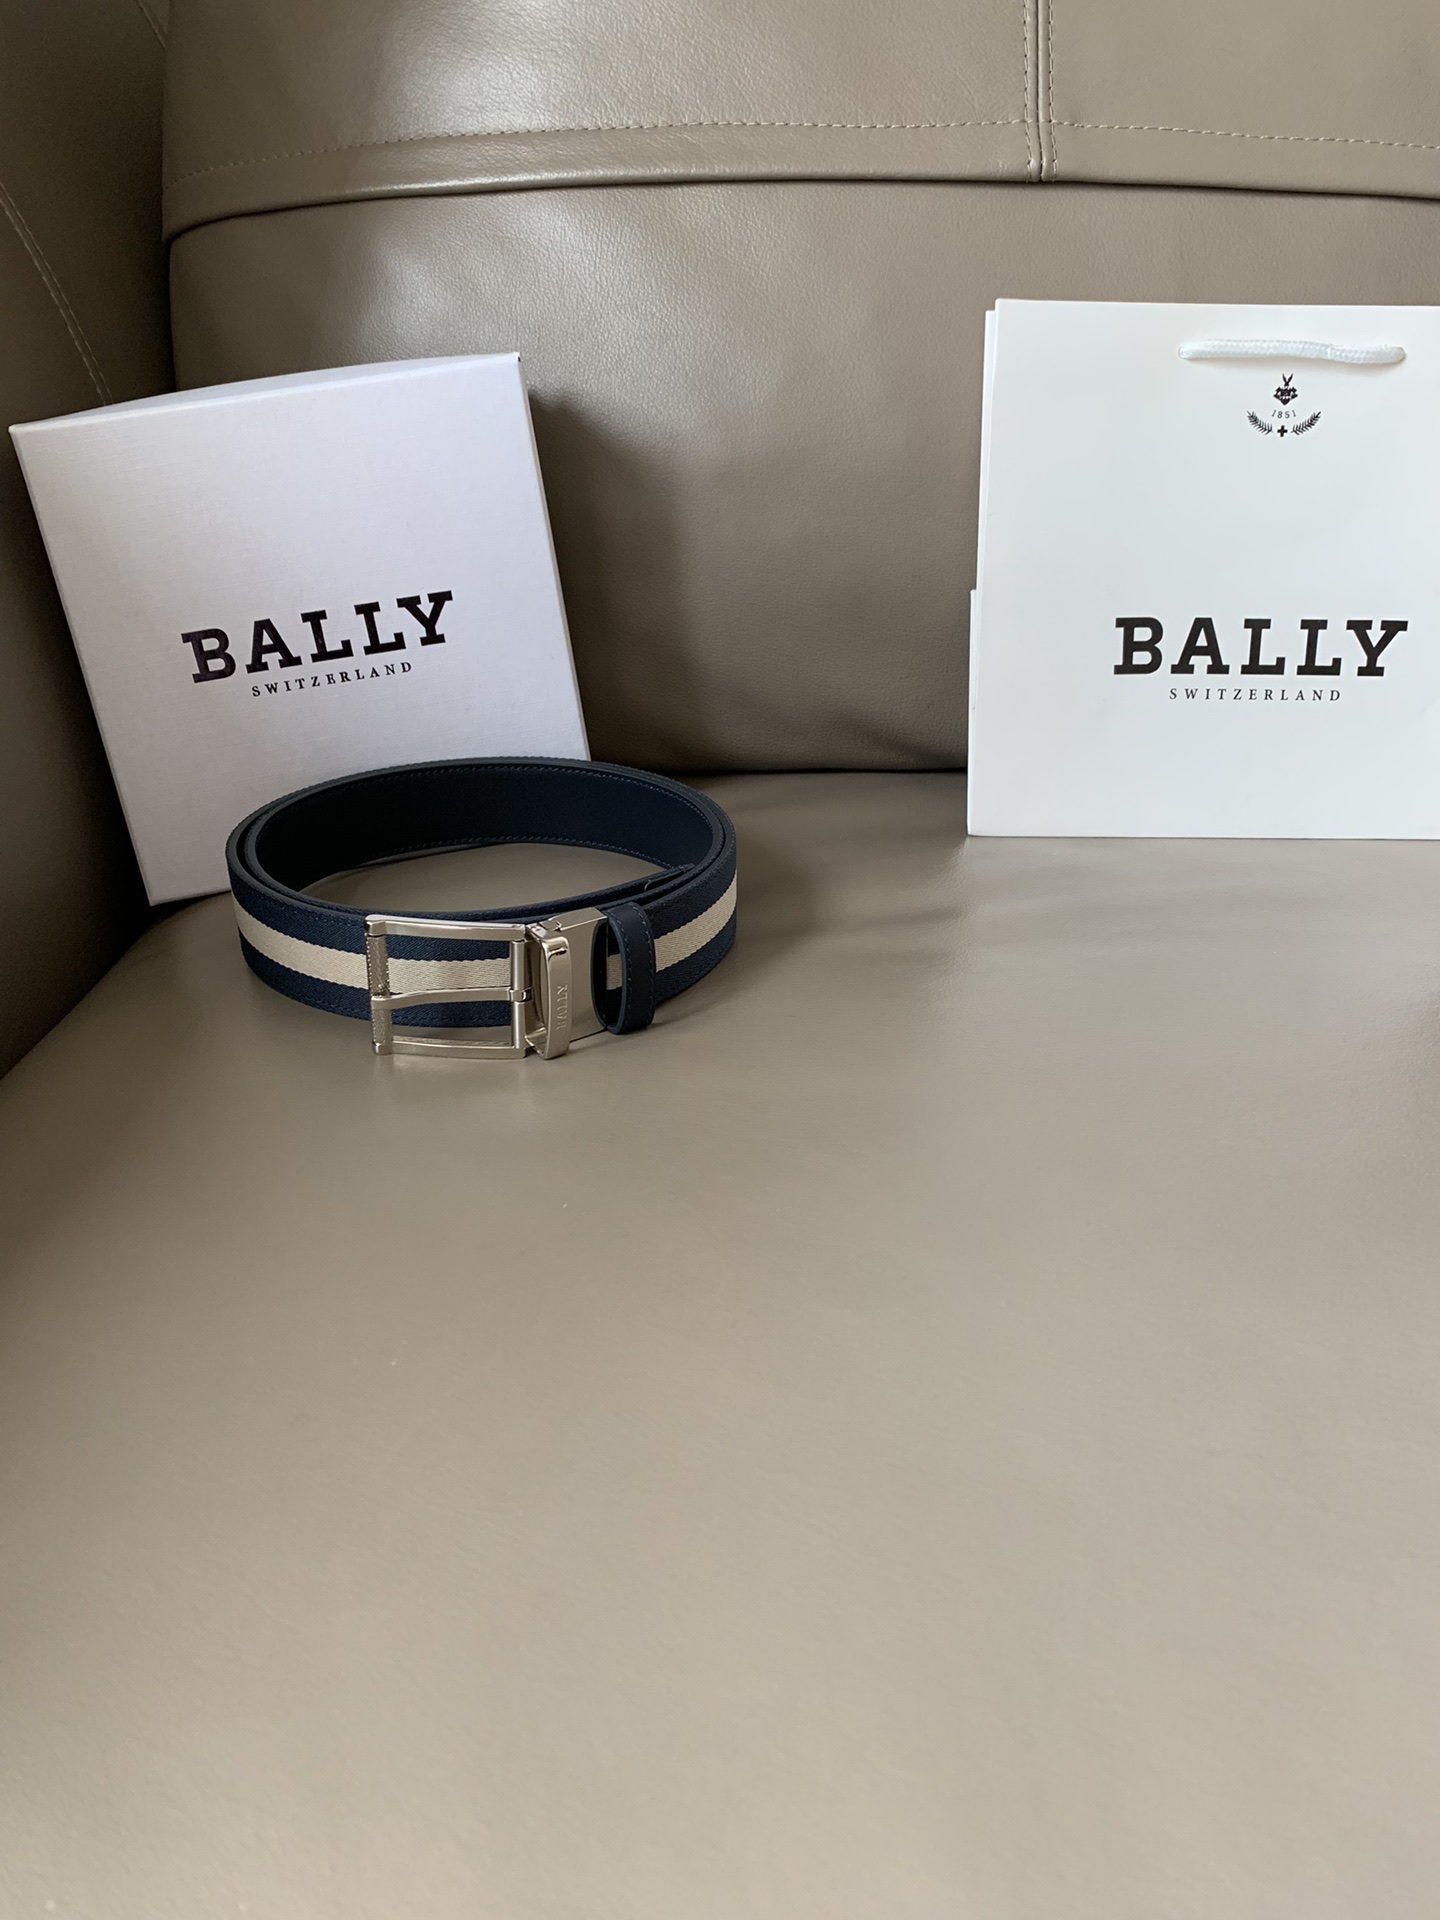 BALLY 발리 Taylan 벨트 (폭:3.5cm)